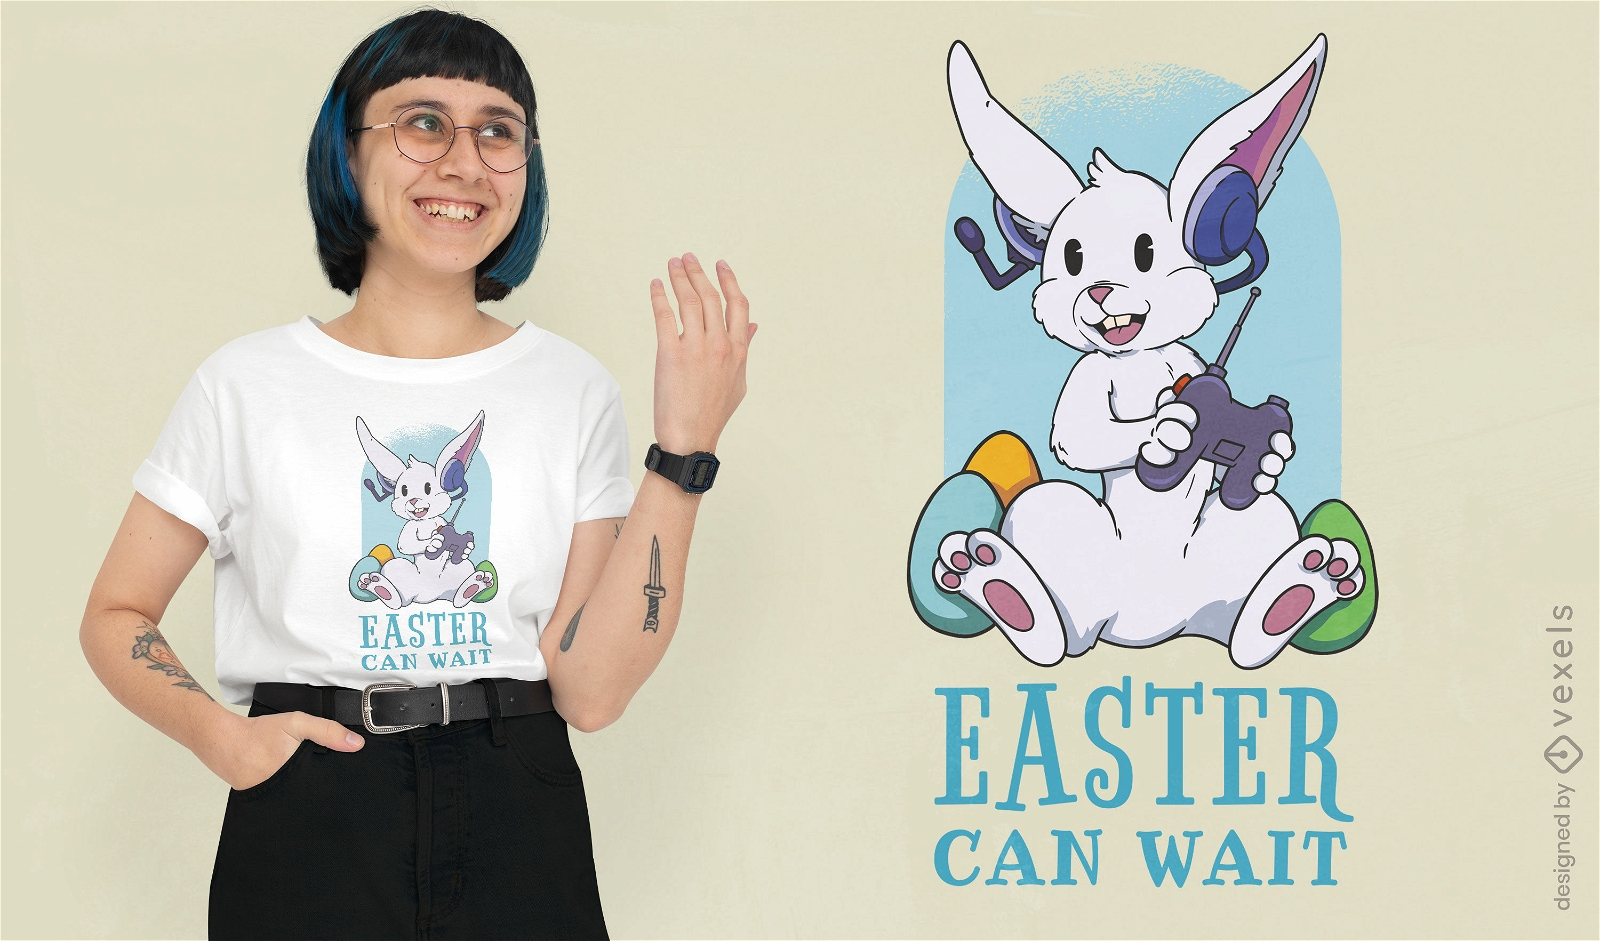 Dise?o de camiseta de conejo de pascua jugando videojuegos.